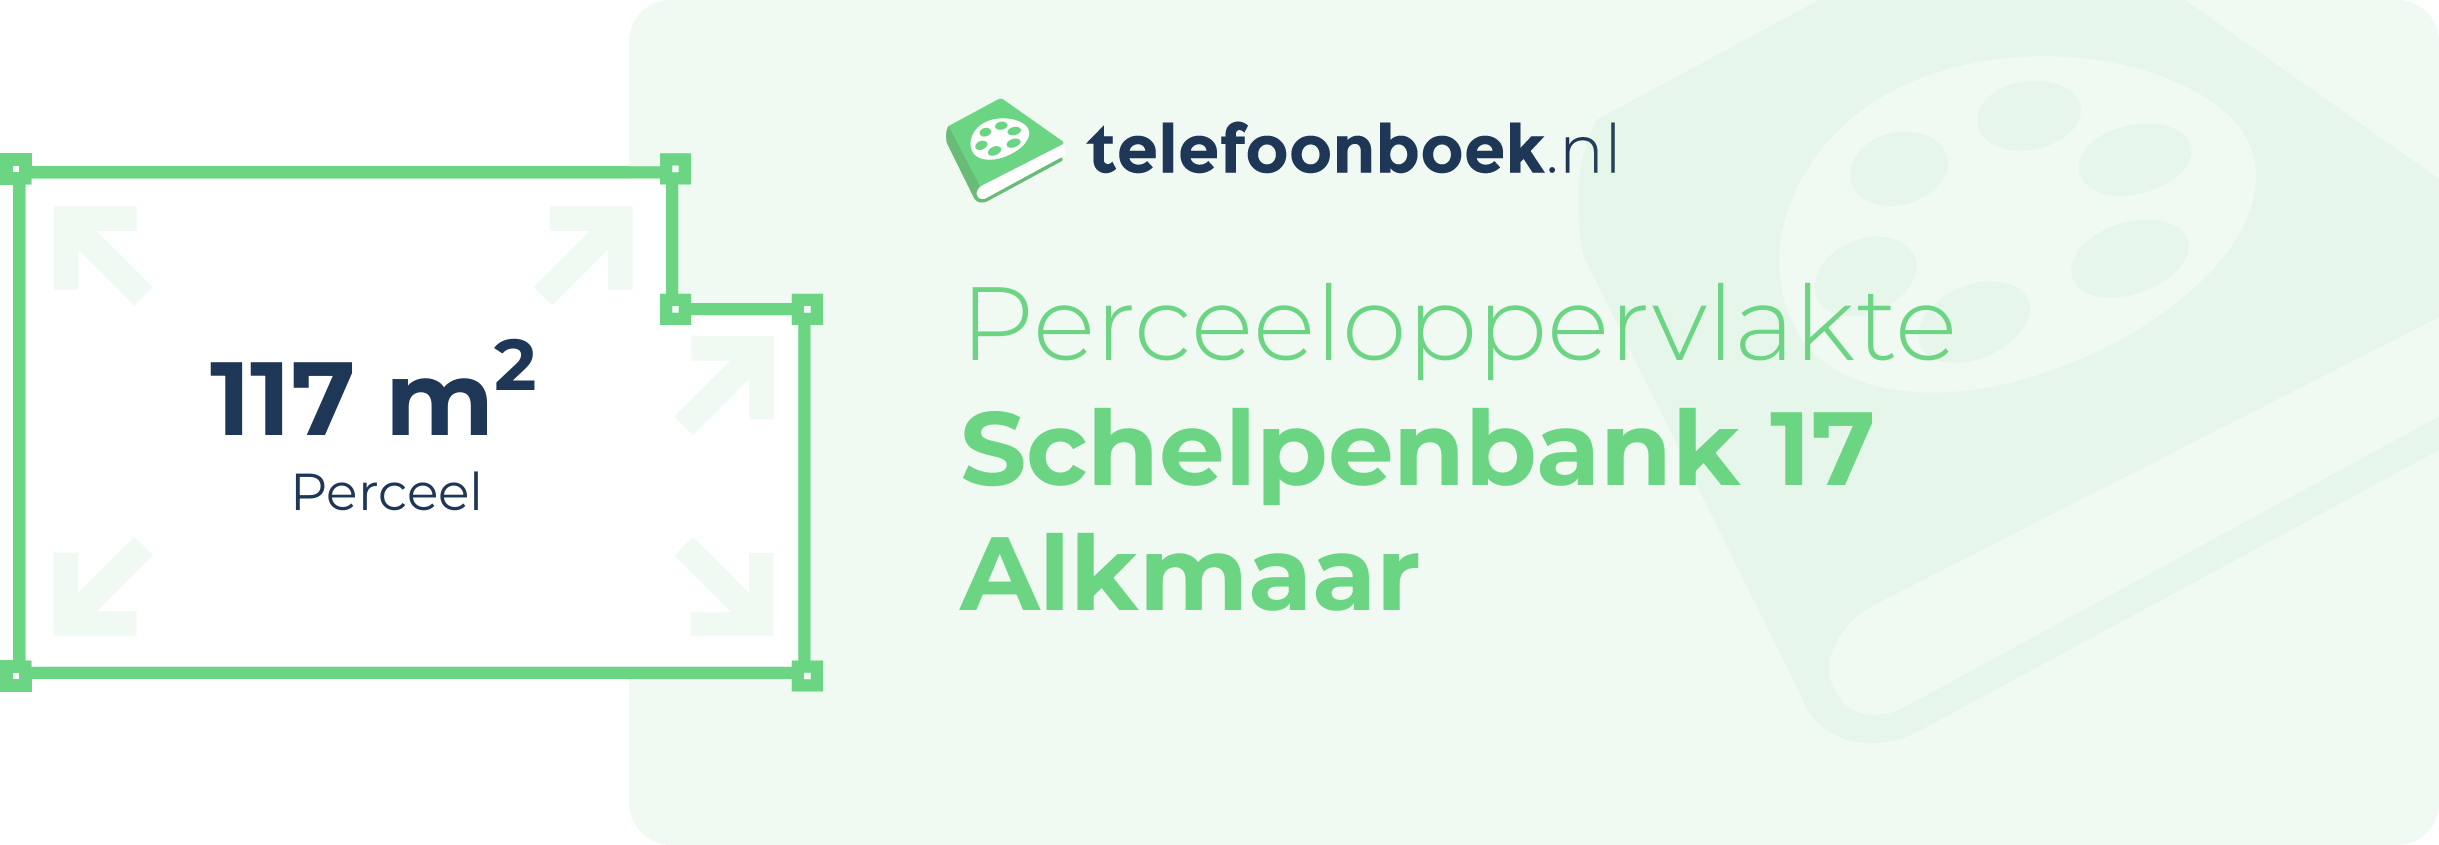 Perceeloppervlakte Schelpenbank 17 Alkmaar